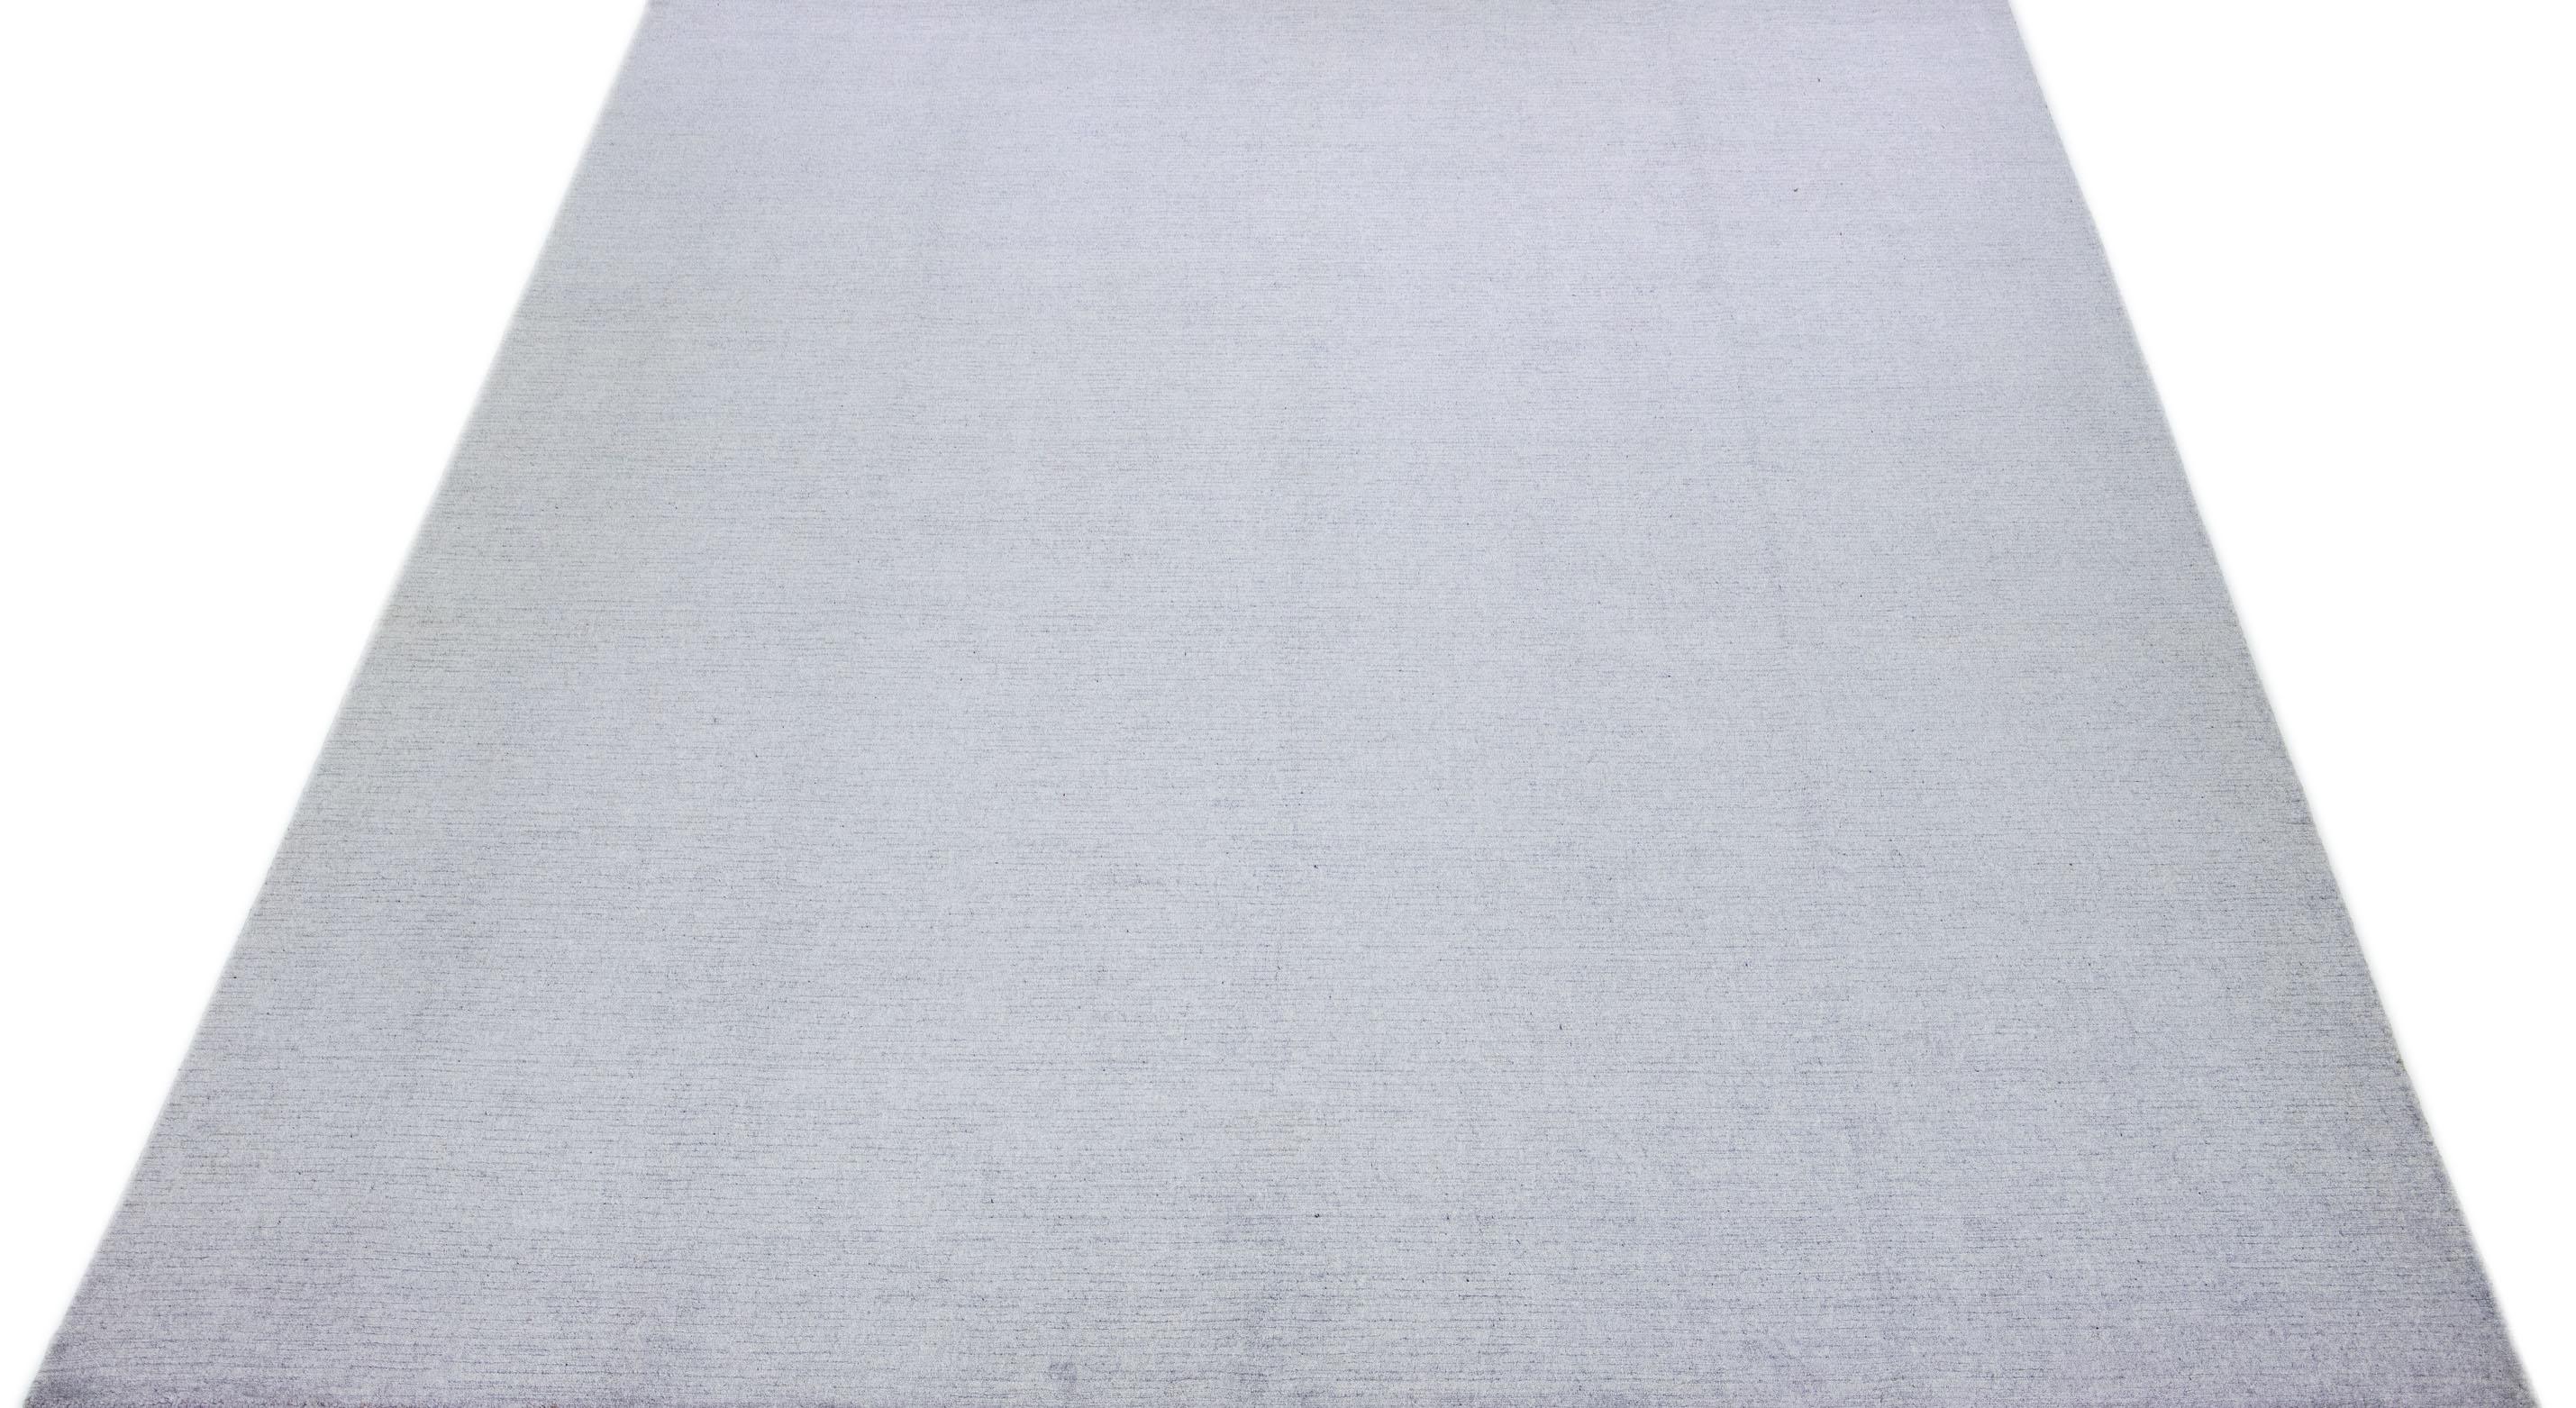 Dieser exquisite zeitgenössische Teppich aus Wolle und Seide hat einen auffälligen grau-silbernen Grundton, der mit einem atemberaubenden geometrischen Muster verziert ist, das anmutig von einem Ende zum anderen fließt.

Dieser Teppich misst 10'2